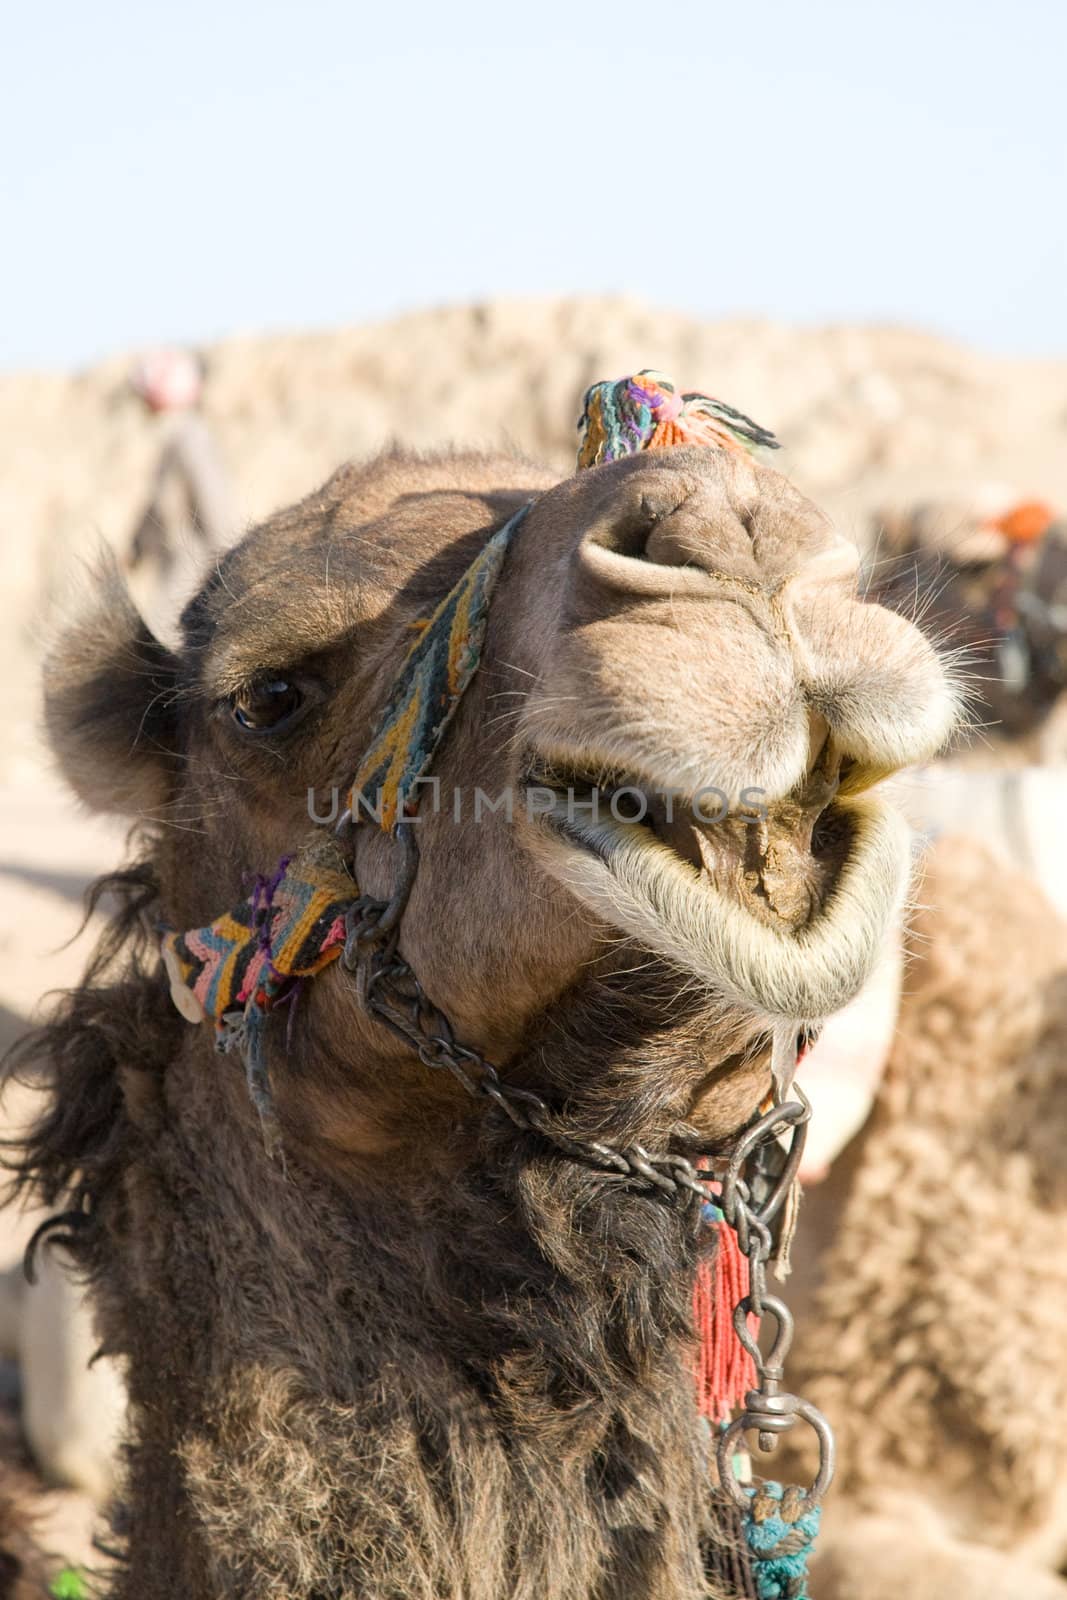 Camel in Sahara Desert, Egypt, On A Sunny Summer Day